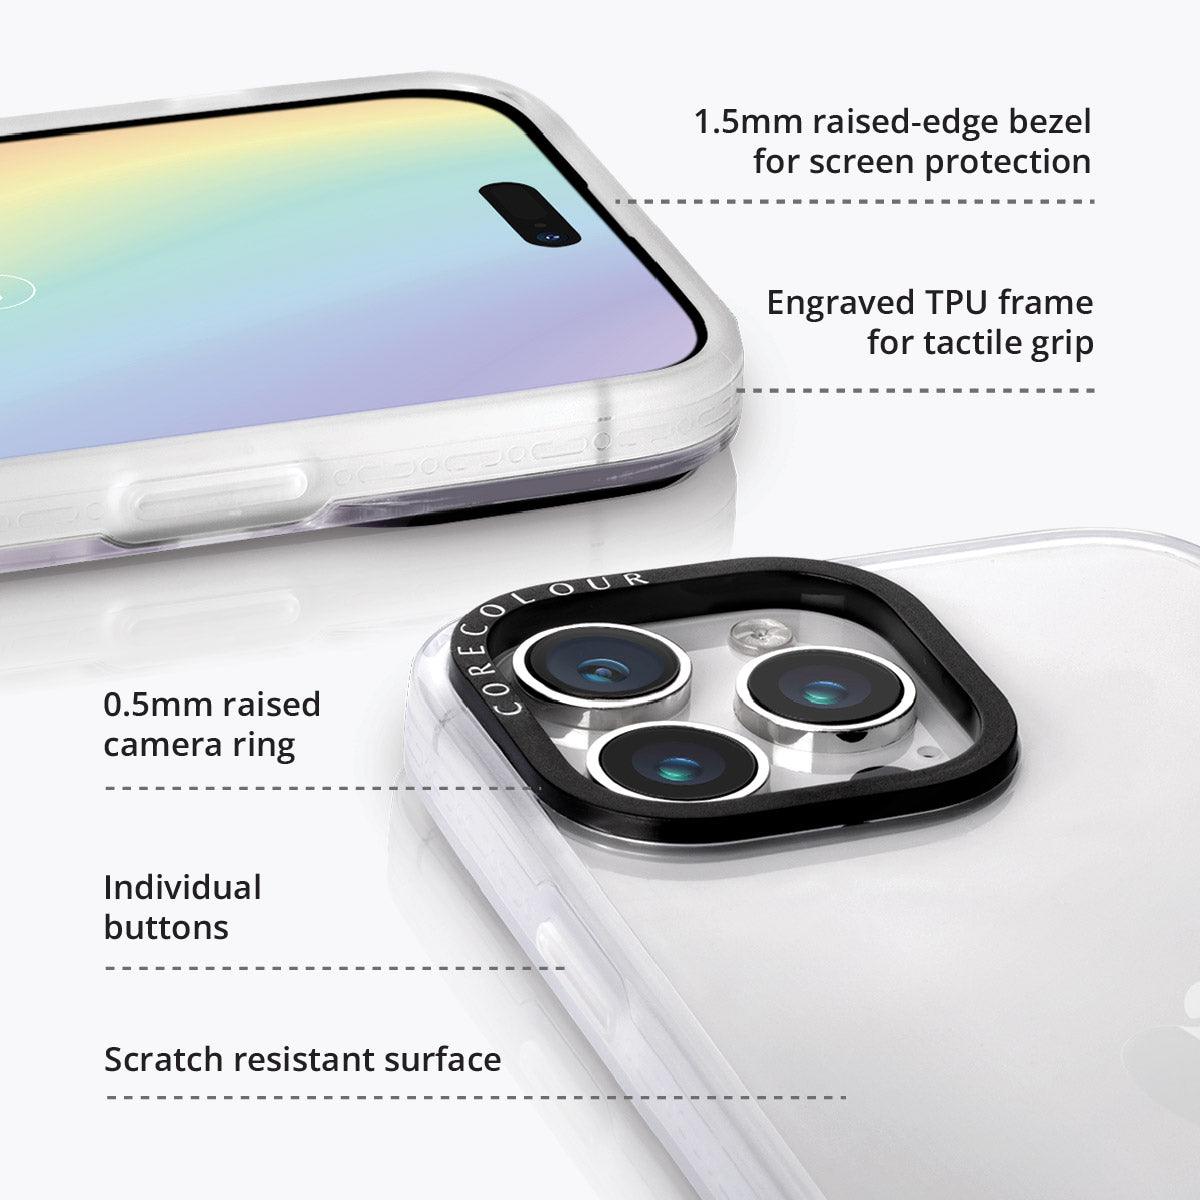 iPhone 13 Pro Rainy Pastel Phone Case - CORECOLOUR AU